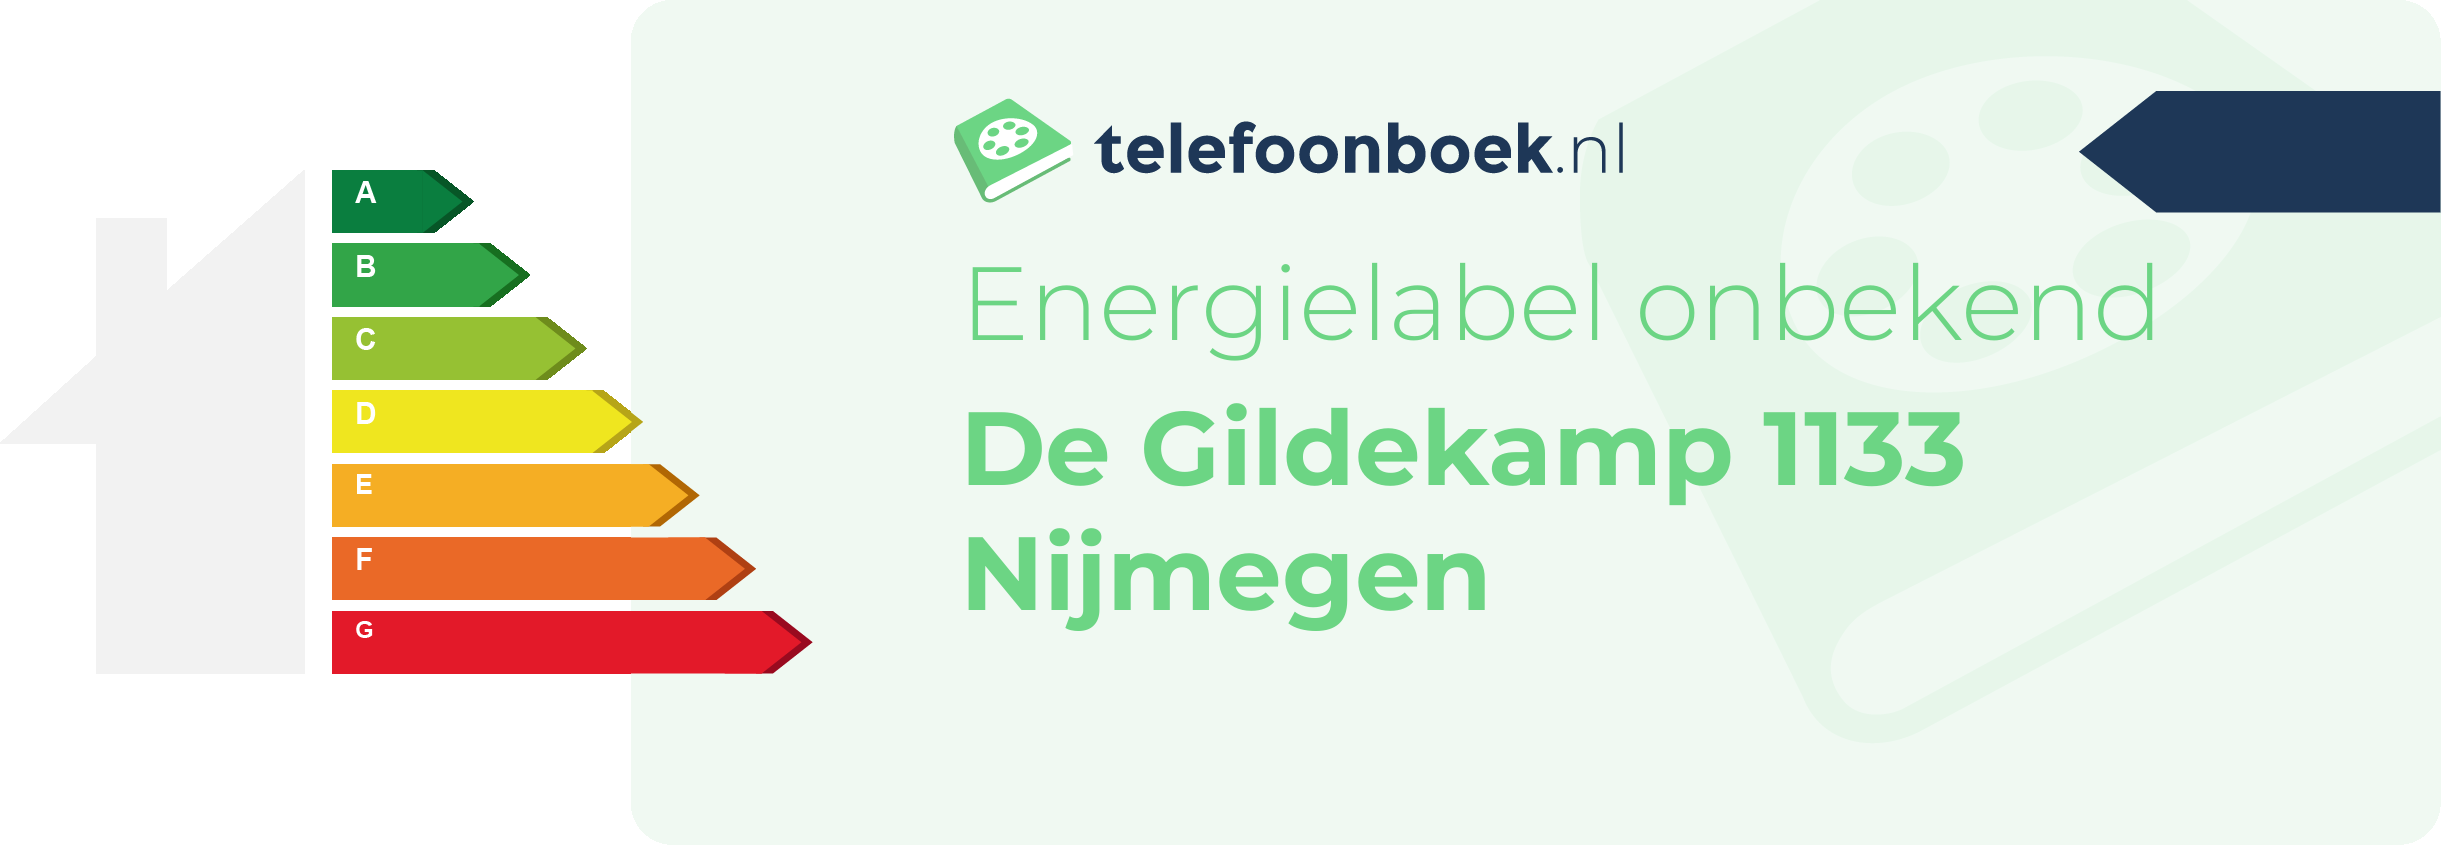 Energielabel De Gildekamp 1133 Nijmegen